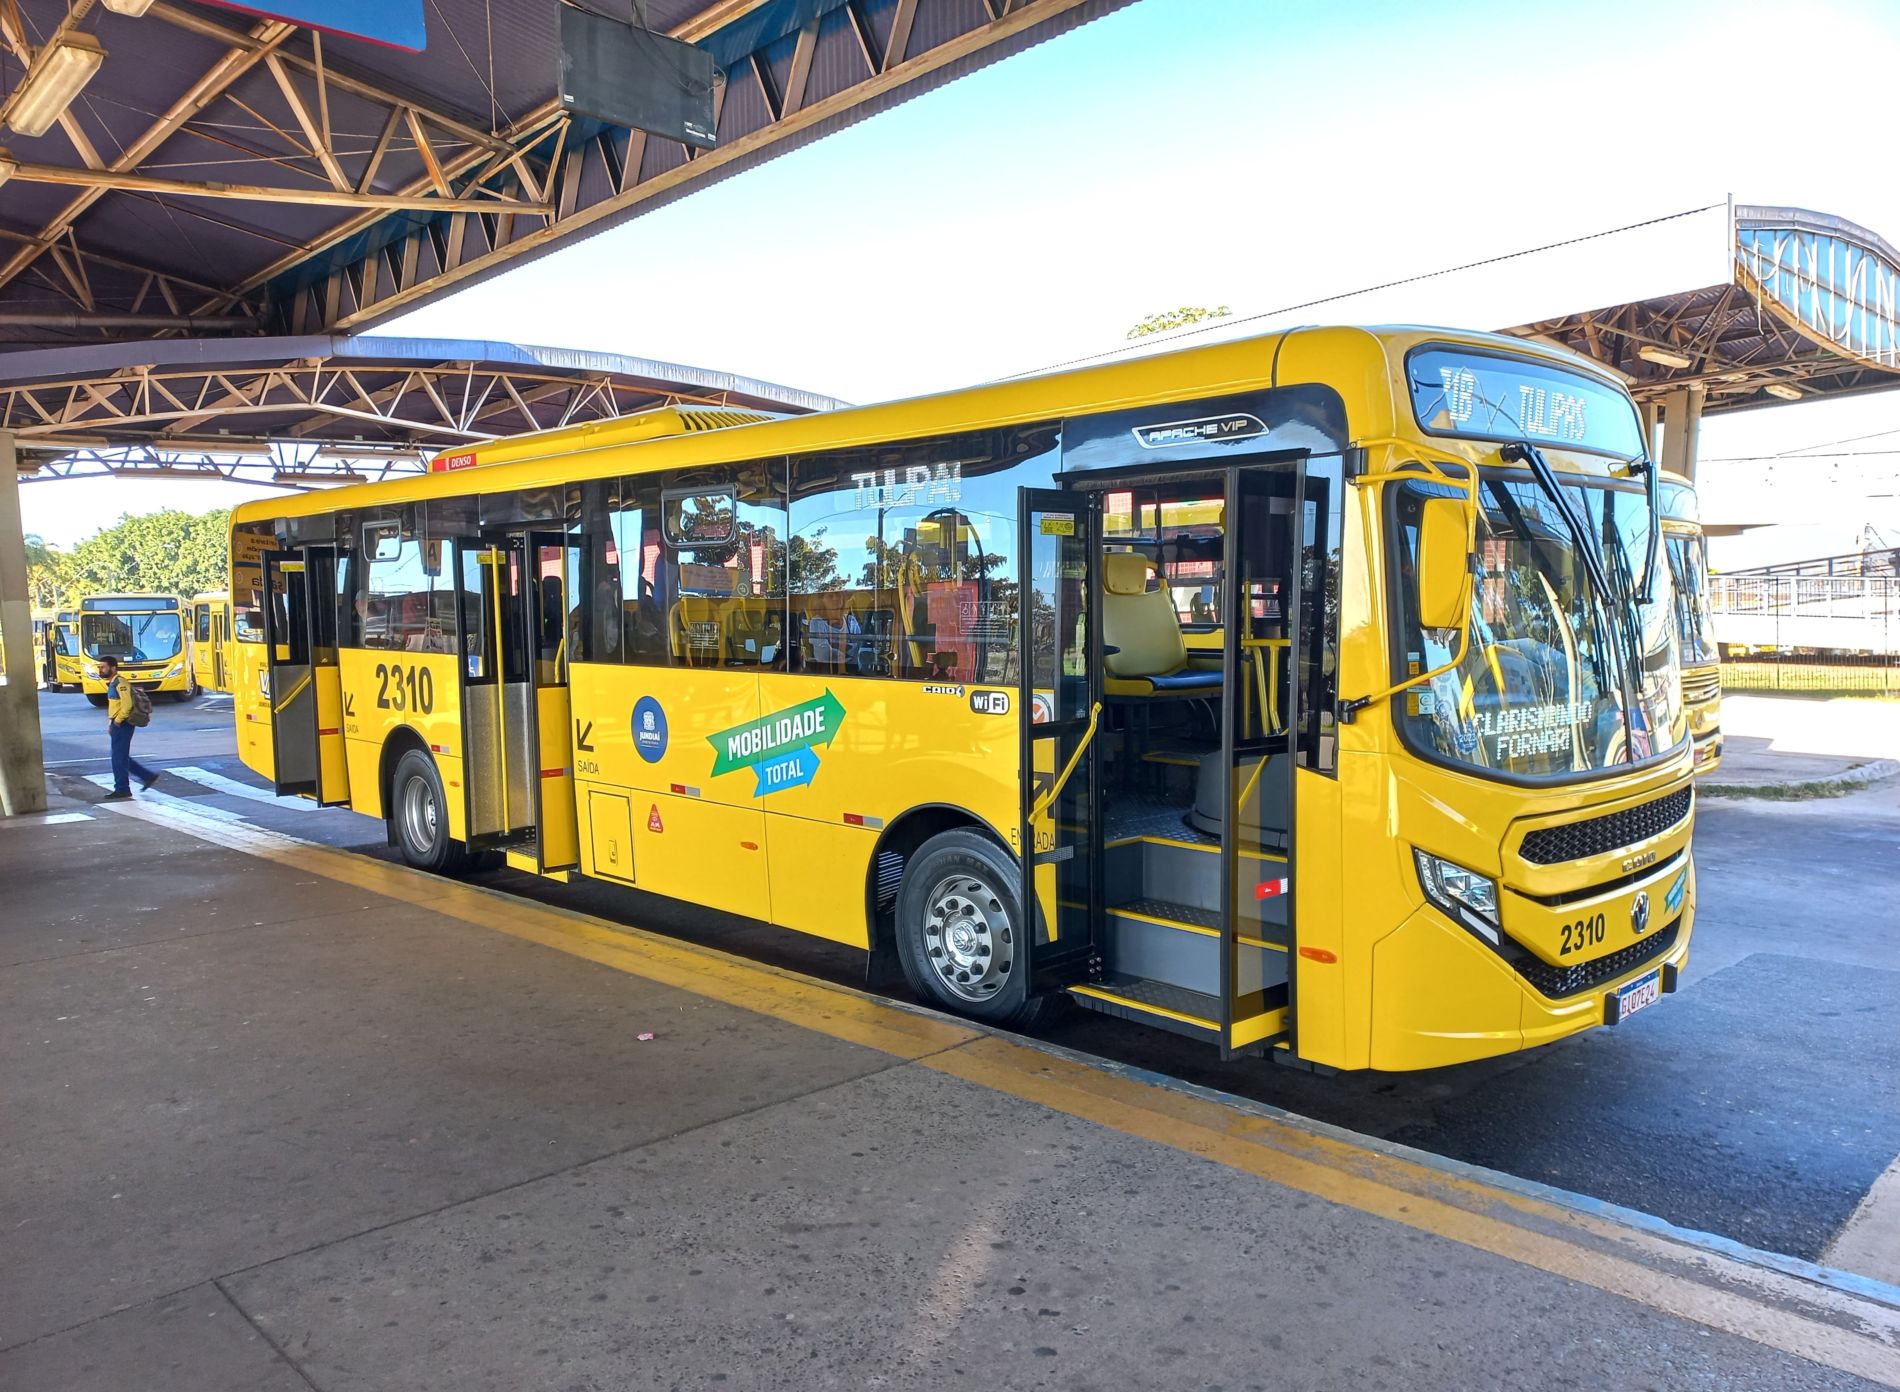 Na imagem, está um novo ônibus. Dos 68 veículos novos, 42 estão em operação, sendo equipados com ar condicionado, wi-fi, GPS, câmeras, elevador para garantir a acessibilidade a pessoas com deficiência, motores menos poluentes e mais tecnológicos.